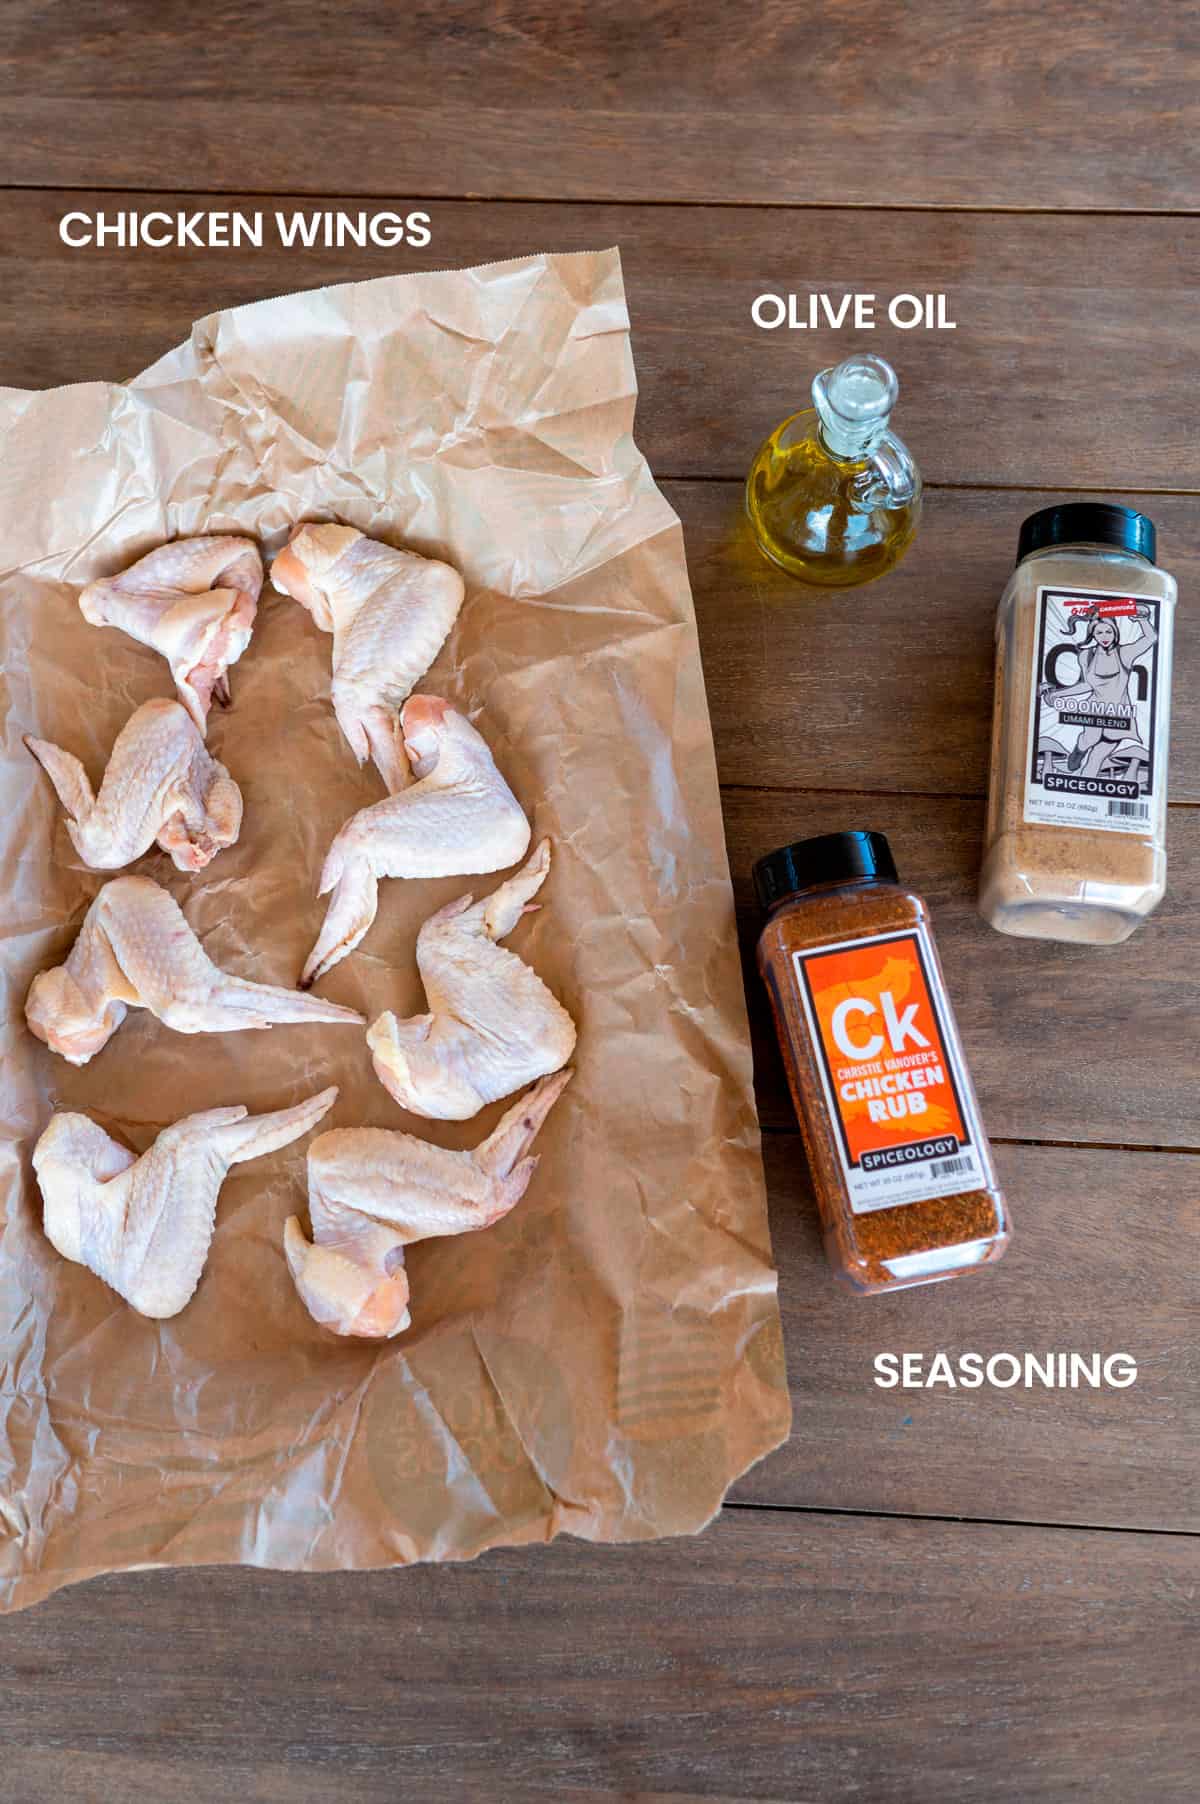 chicken wings ingredients: chicken wings, olive oil, seasoning.